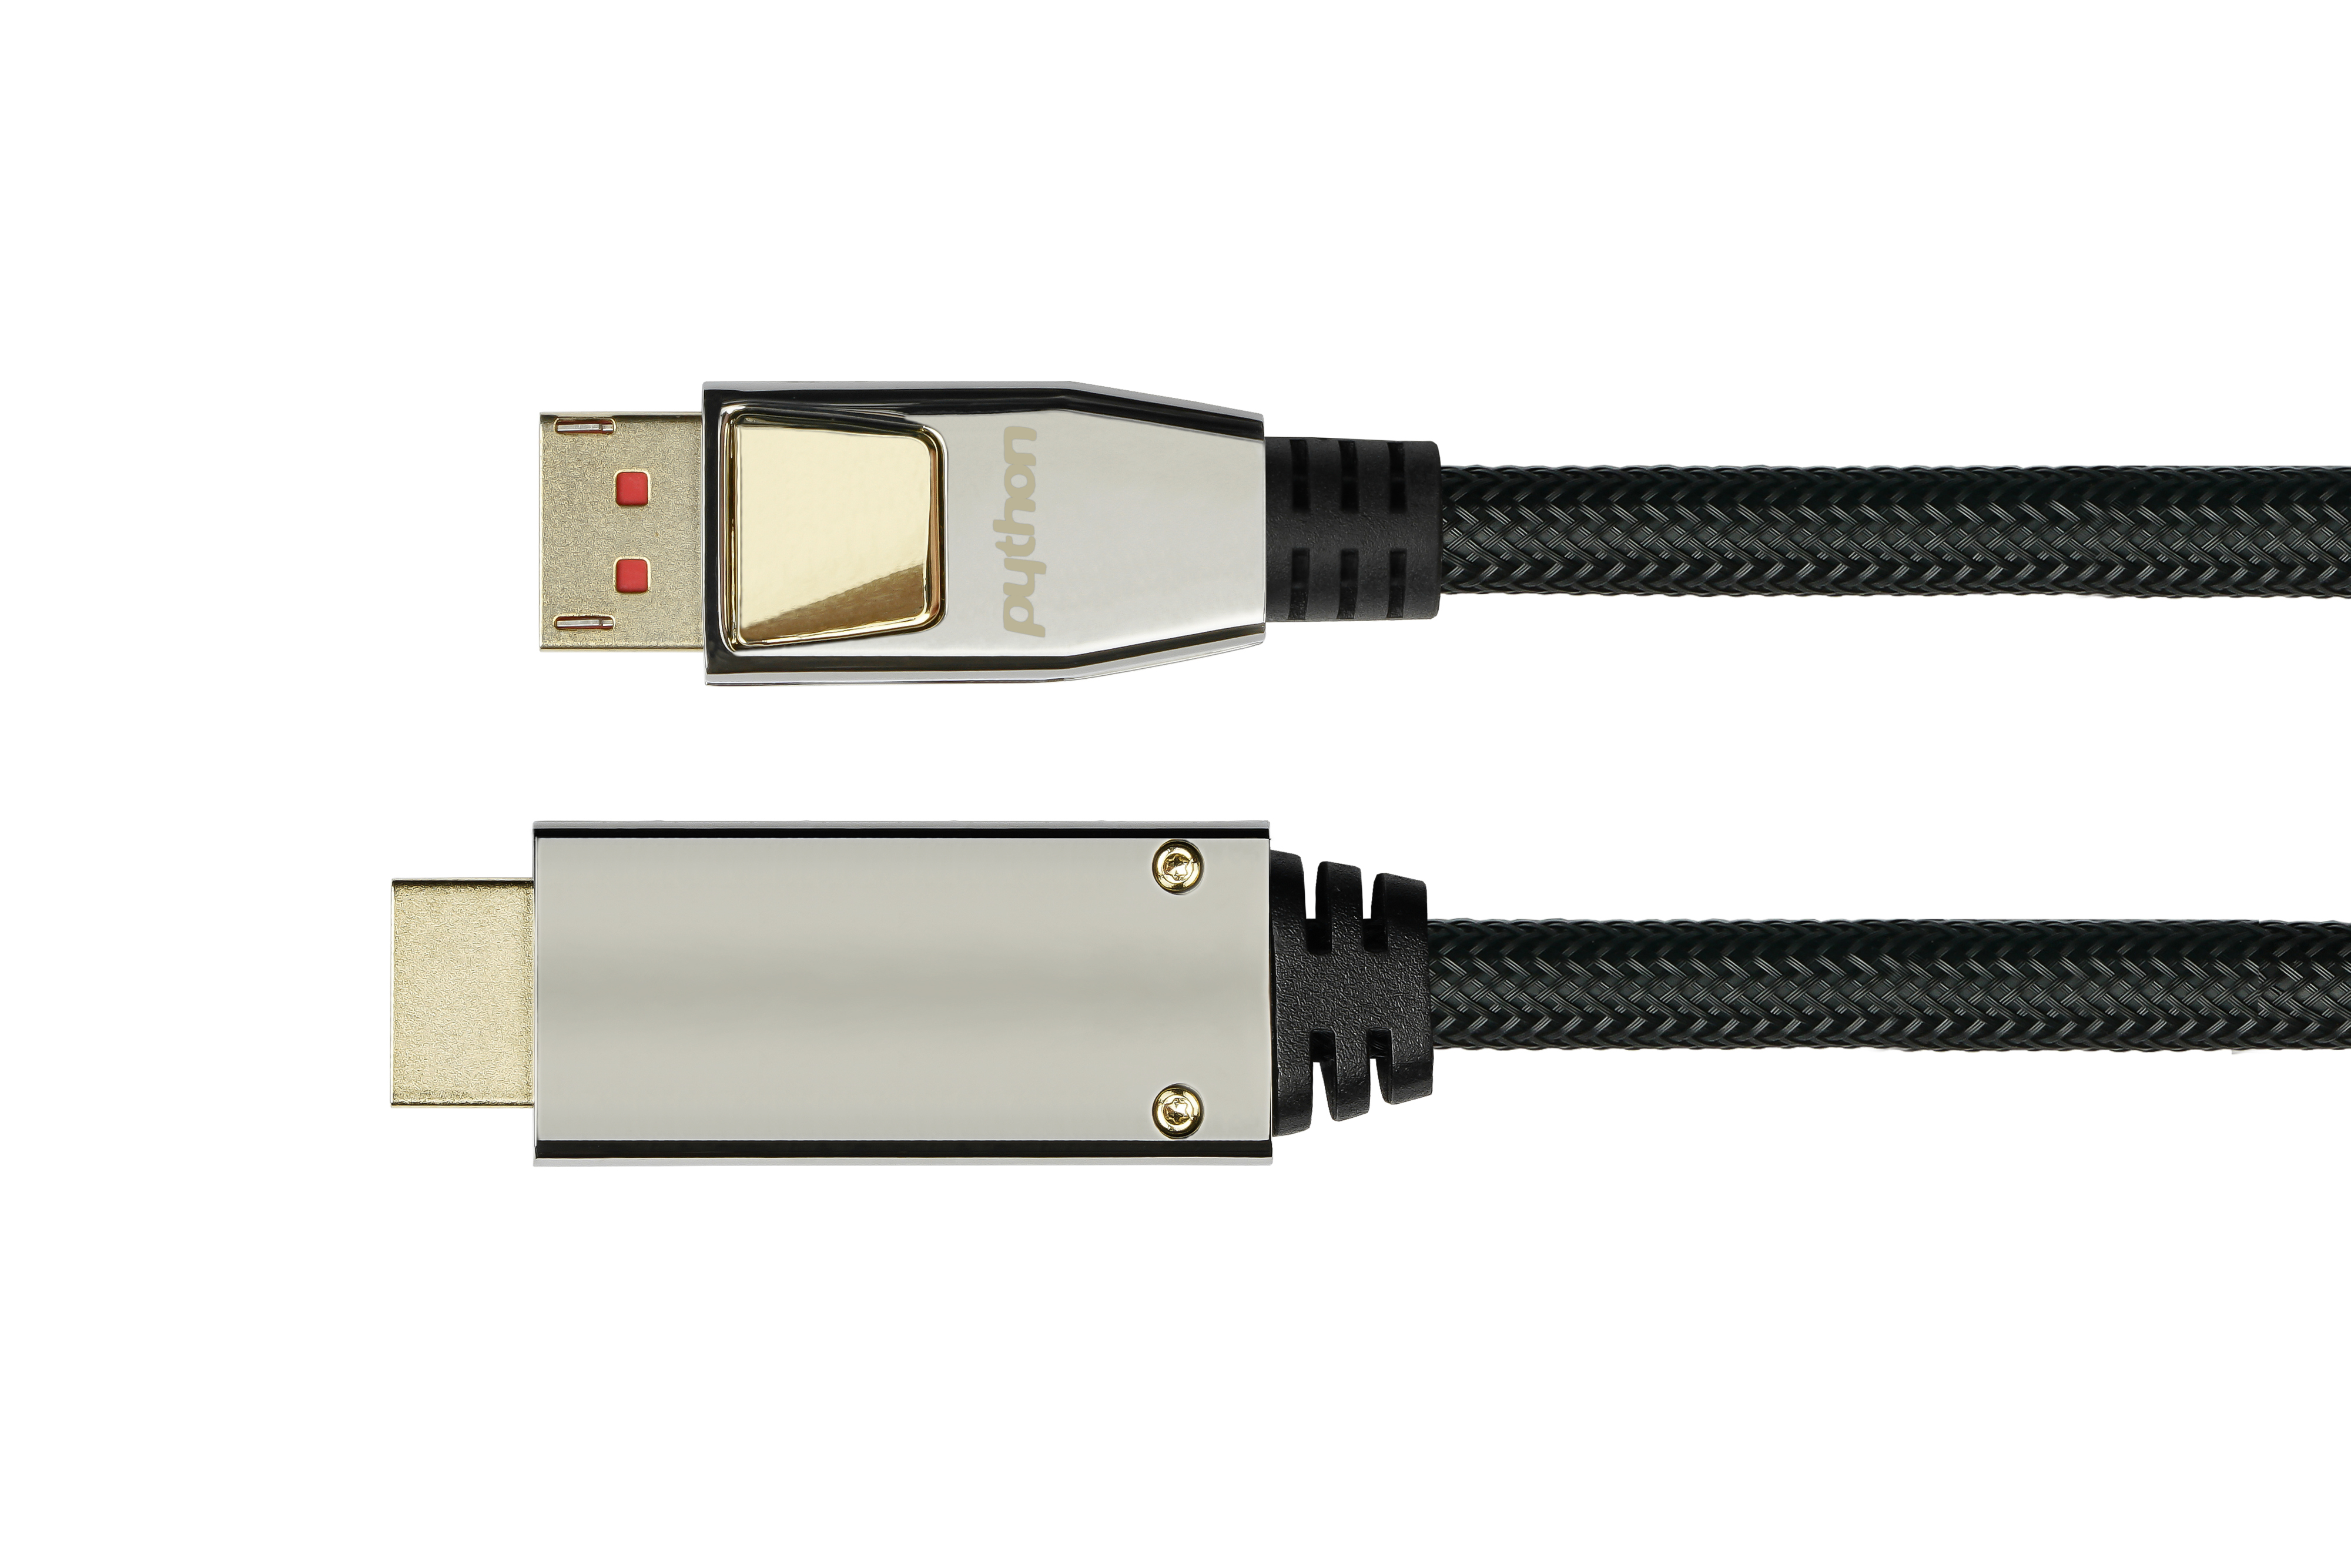 PYTHON Anschlusskabel DisplayPort an 2.0, 1.4 3m, HDMI schwarz, m 3 Displayport